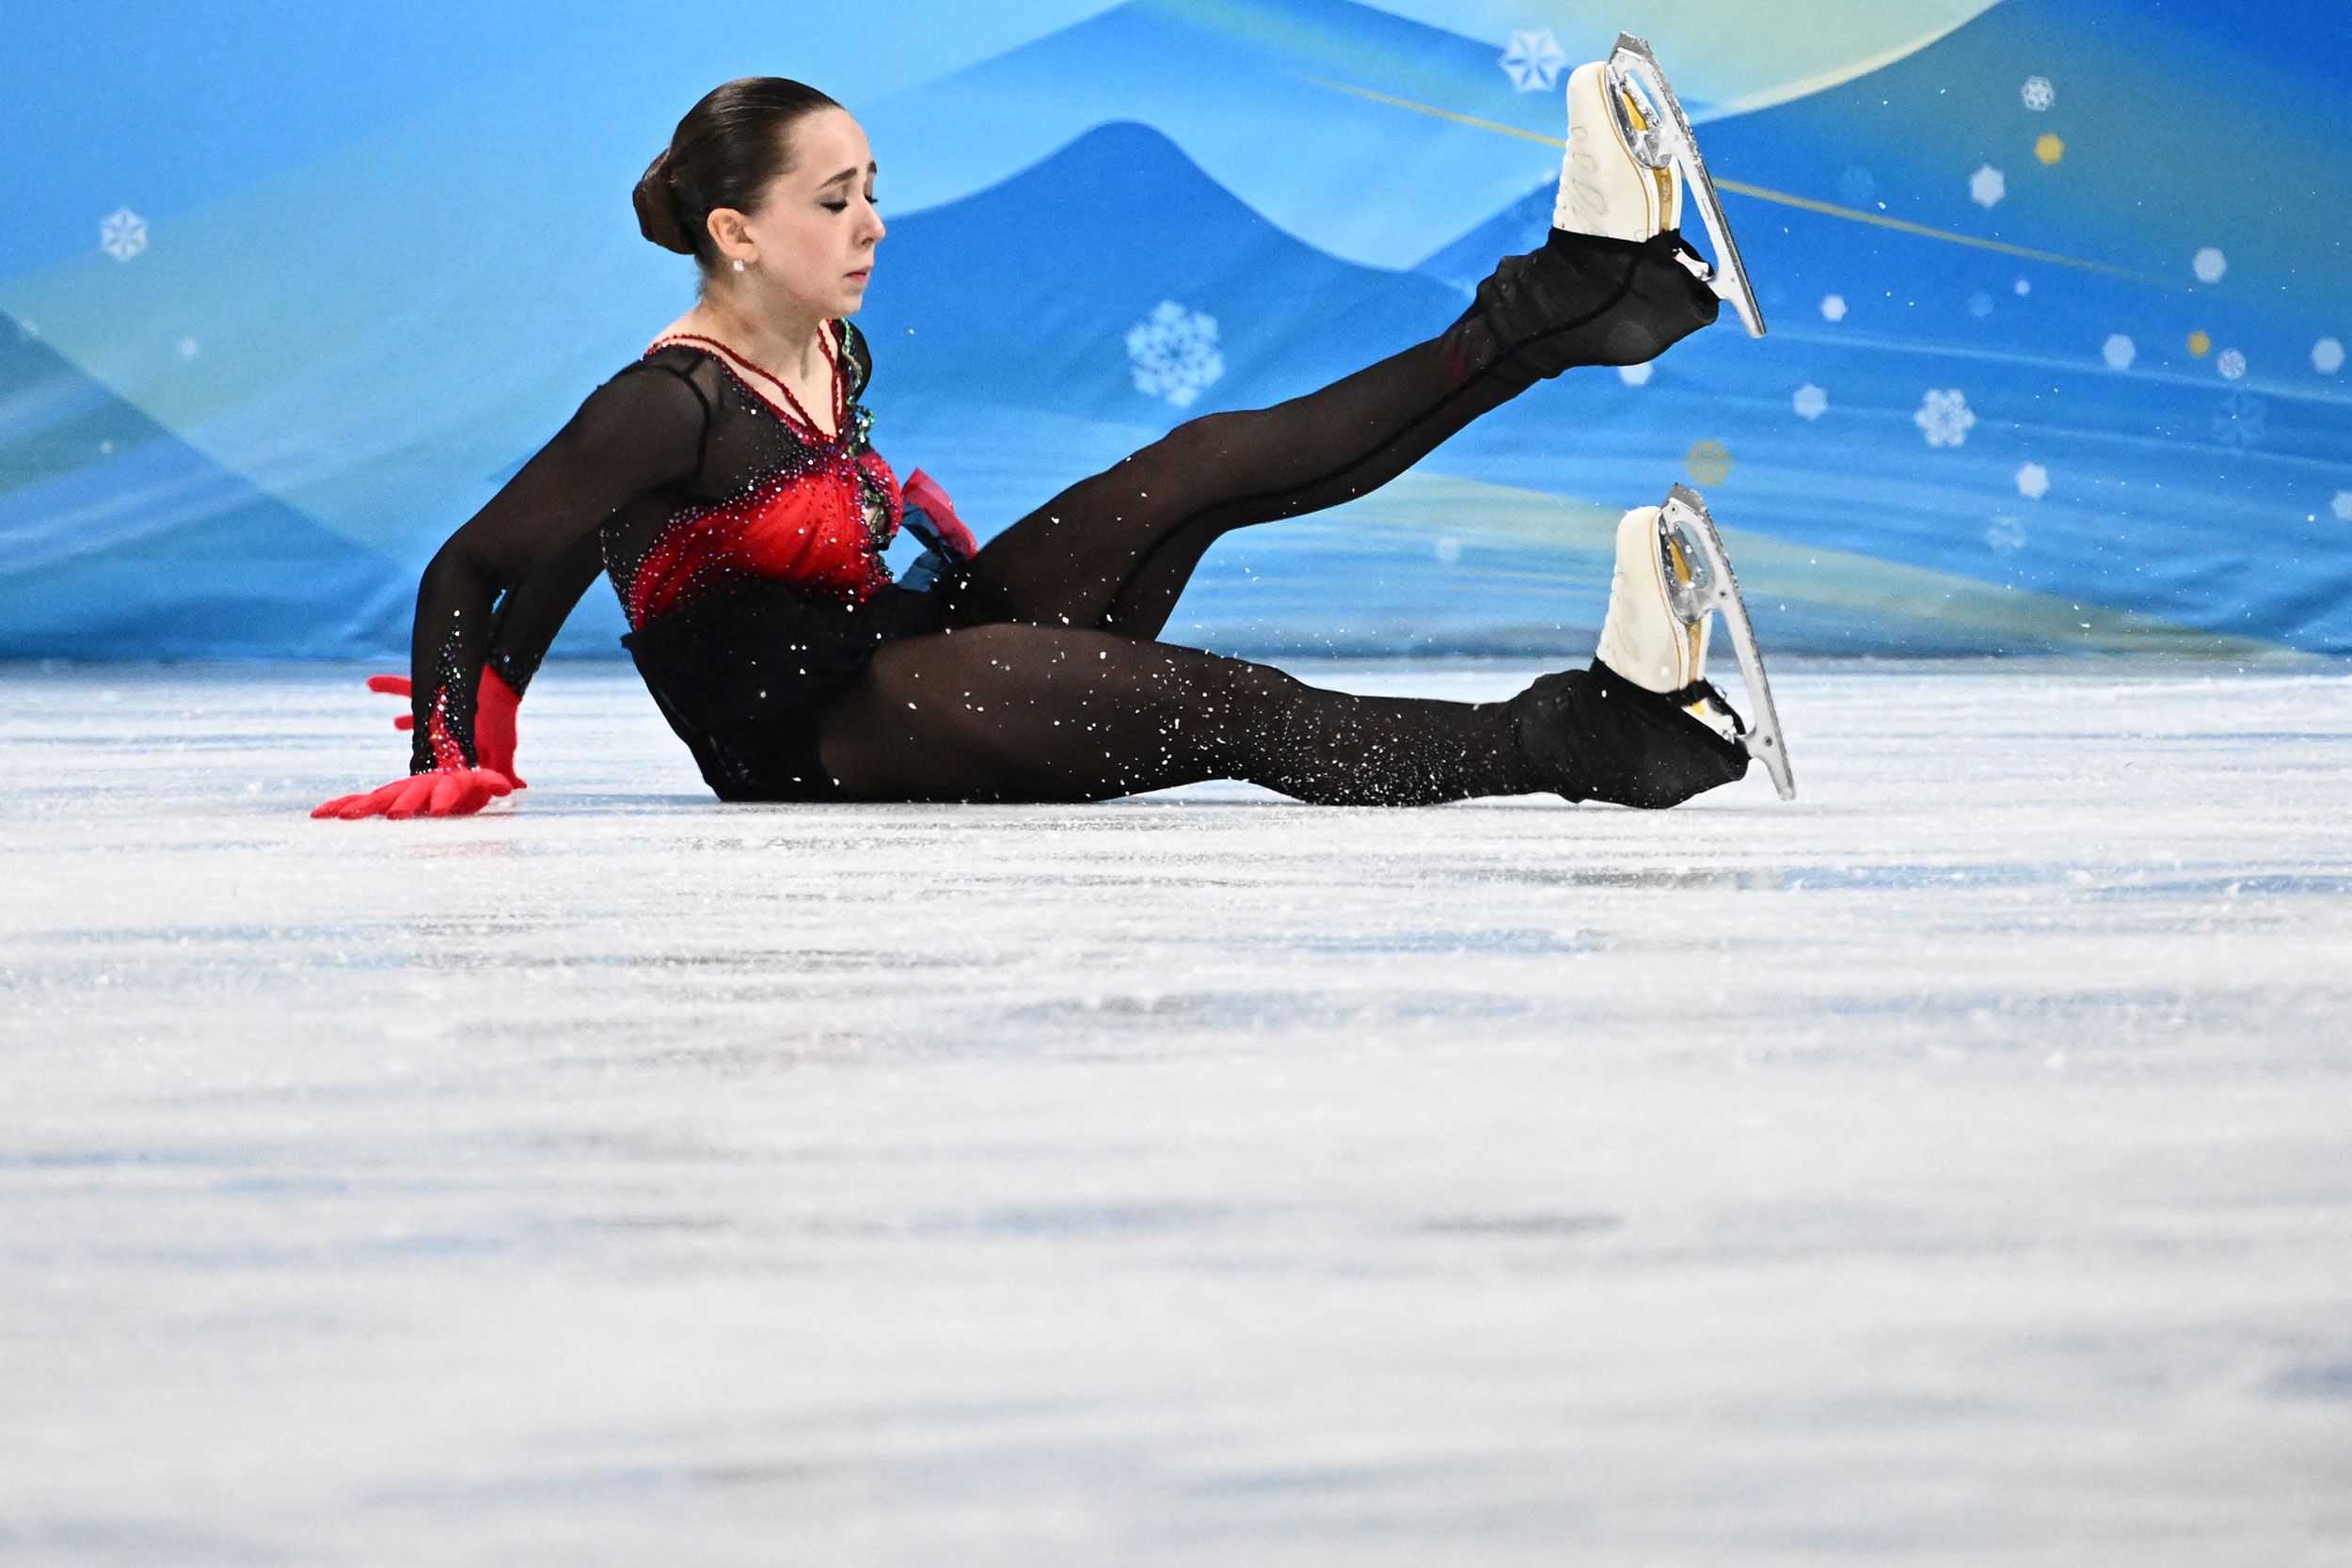 Why Kamila Valieva's 'very traumatizing' skating controversy matters | CNN